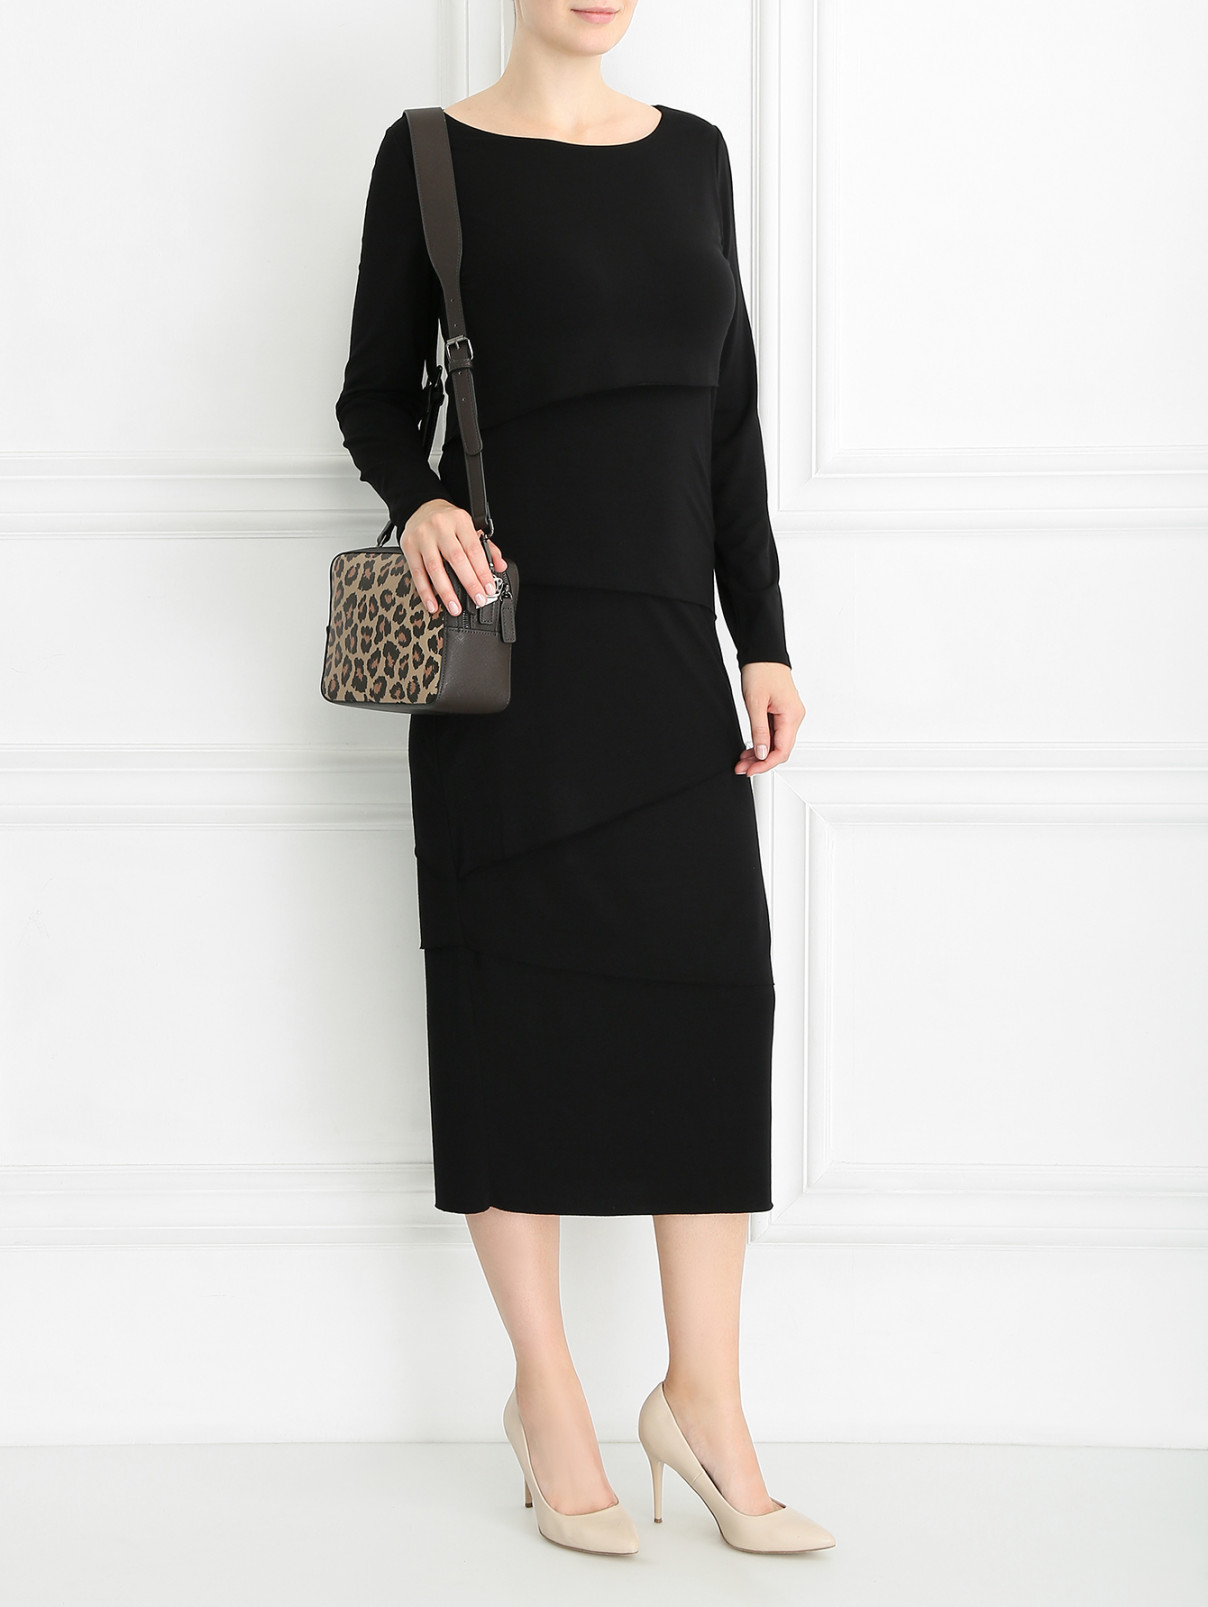 Платье с декоративными элементами Marina Rinaldi  –  Модель Общий вид  – Цвет:  Черный